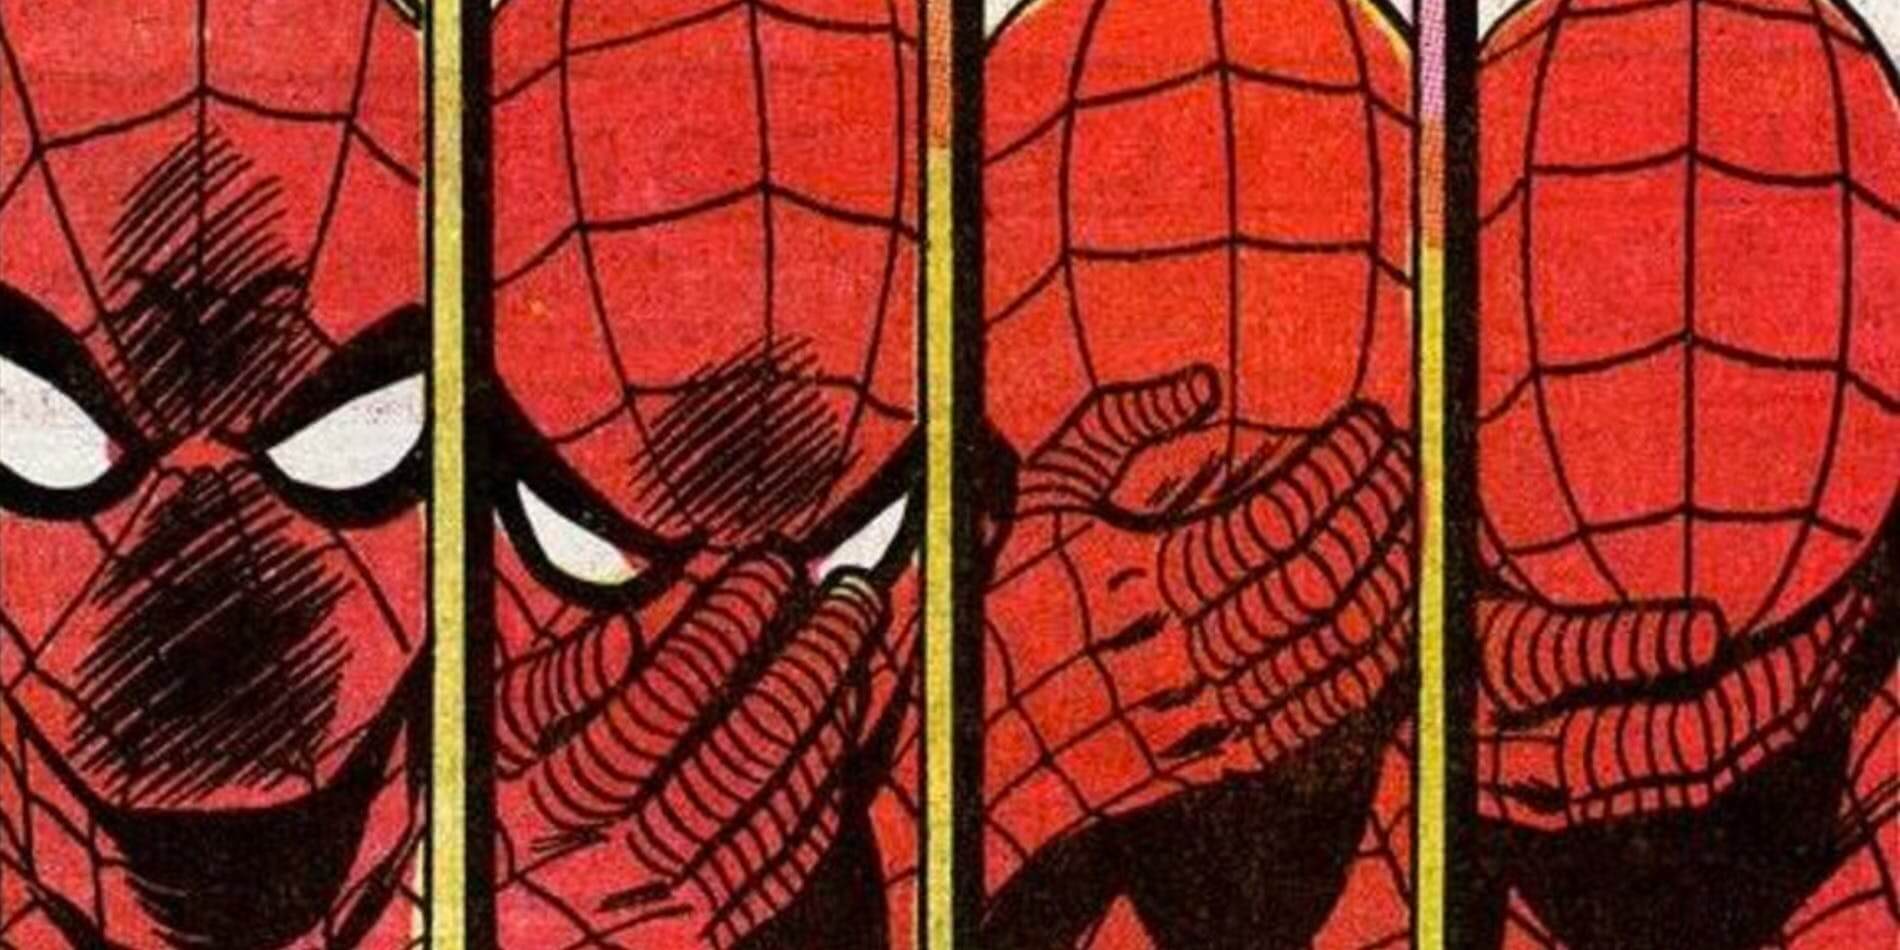 Spider-Man, Spider-Man facepalm, sad Spider-Man, diversity